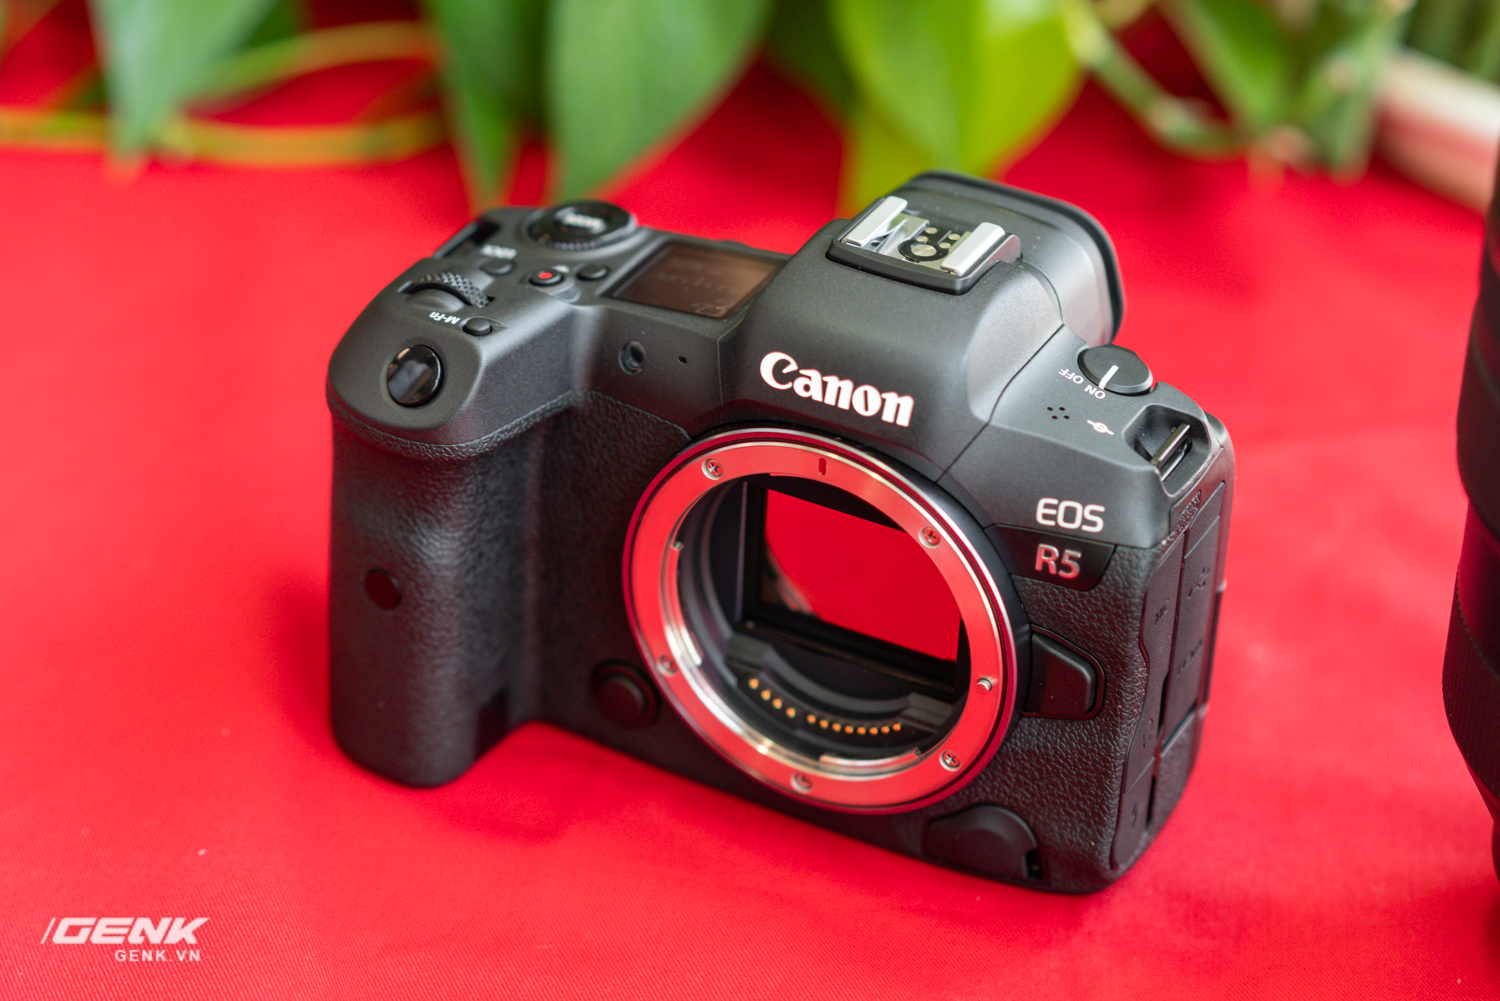 Trên tay bộ đôi máy ảnh Canon EOS R5 và R6: Cấu hình video mạnh mẽ ...